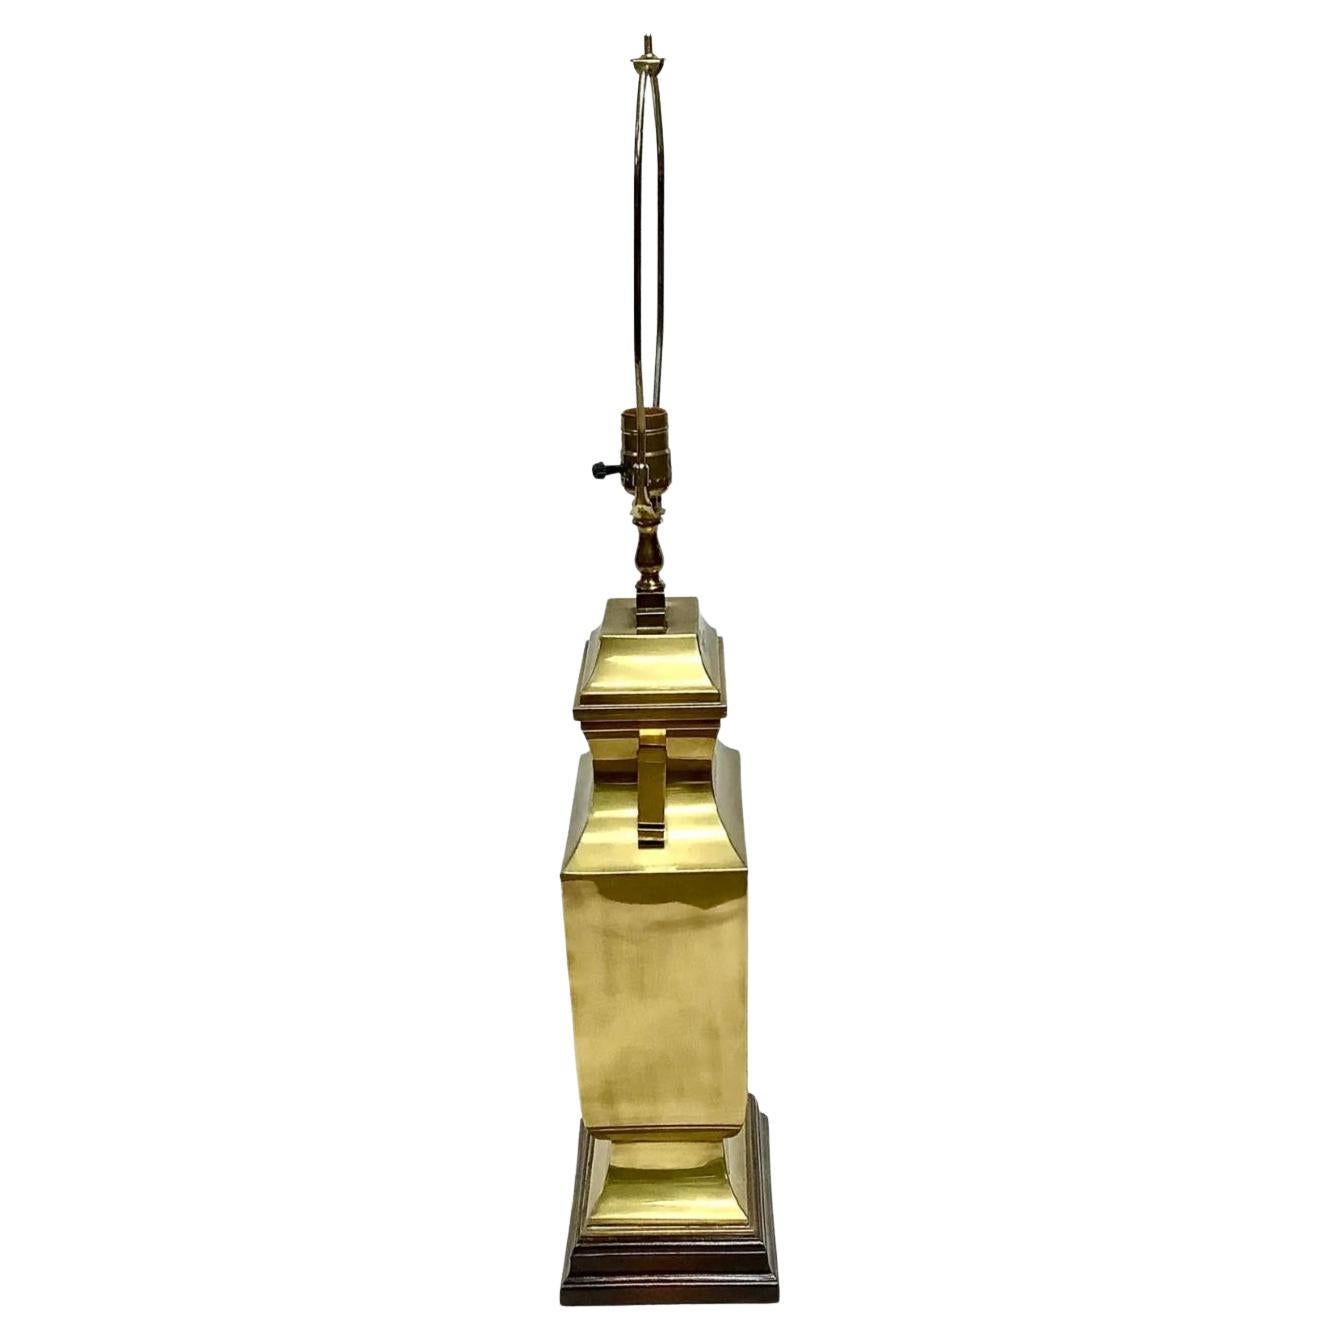 Vintage Messing Chinoiserie Tischlampe mit Holzsockel.  Inklusive Harfe, ohne Knauf und Schirm. Verkabelt und funktionstüchtig. 